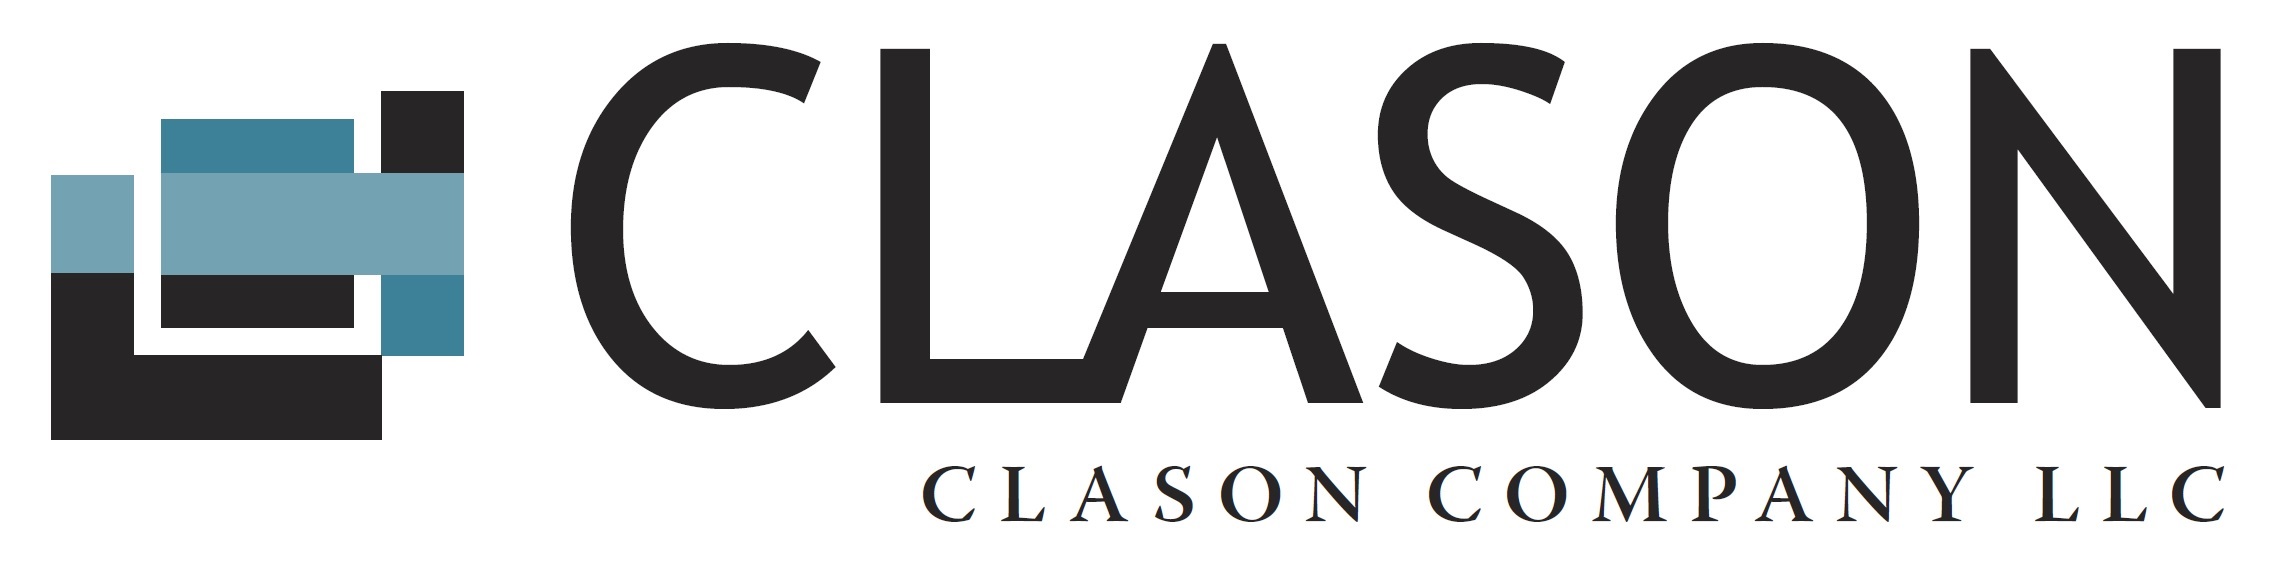 Clason Company | Home Builder & Developer in Southern Oregon